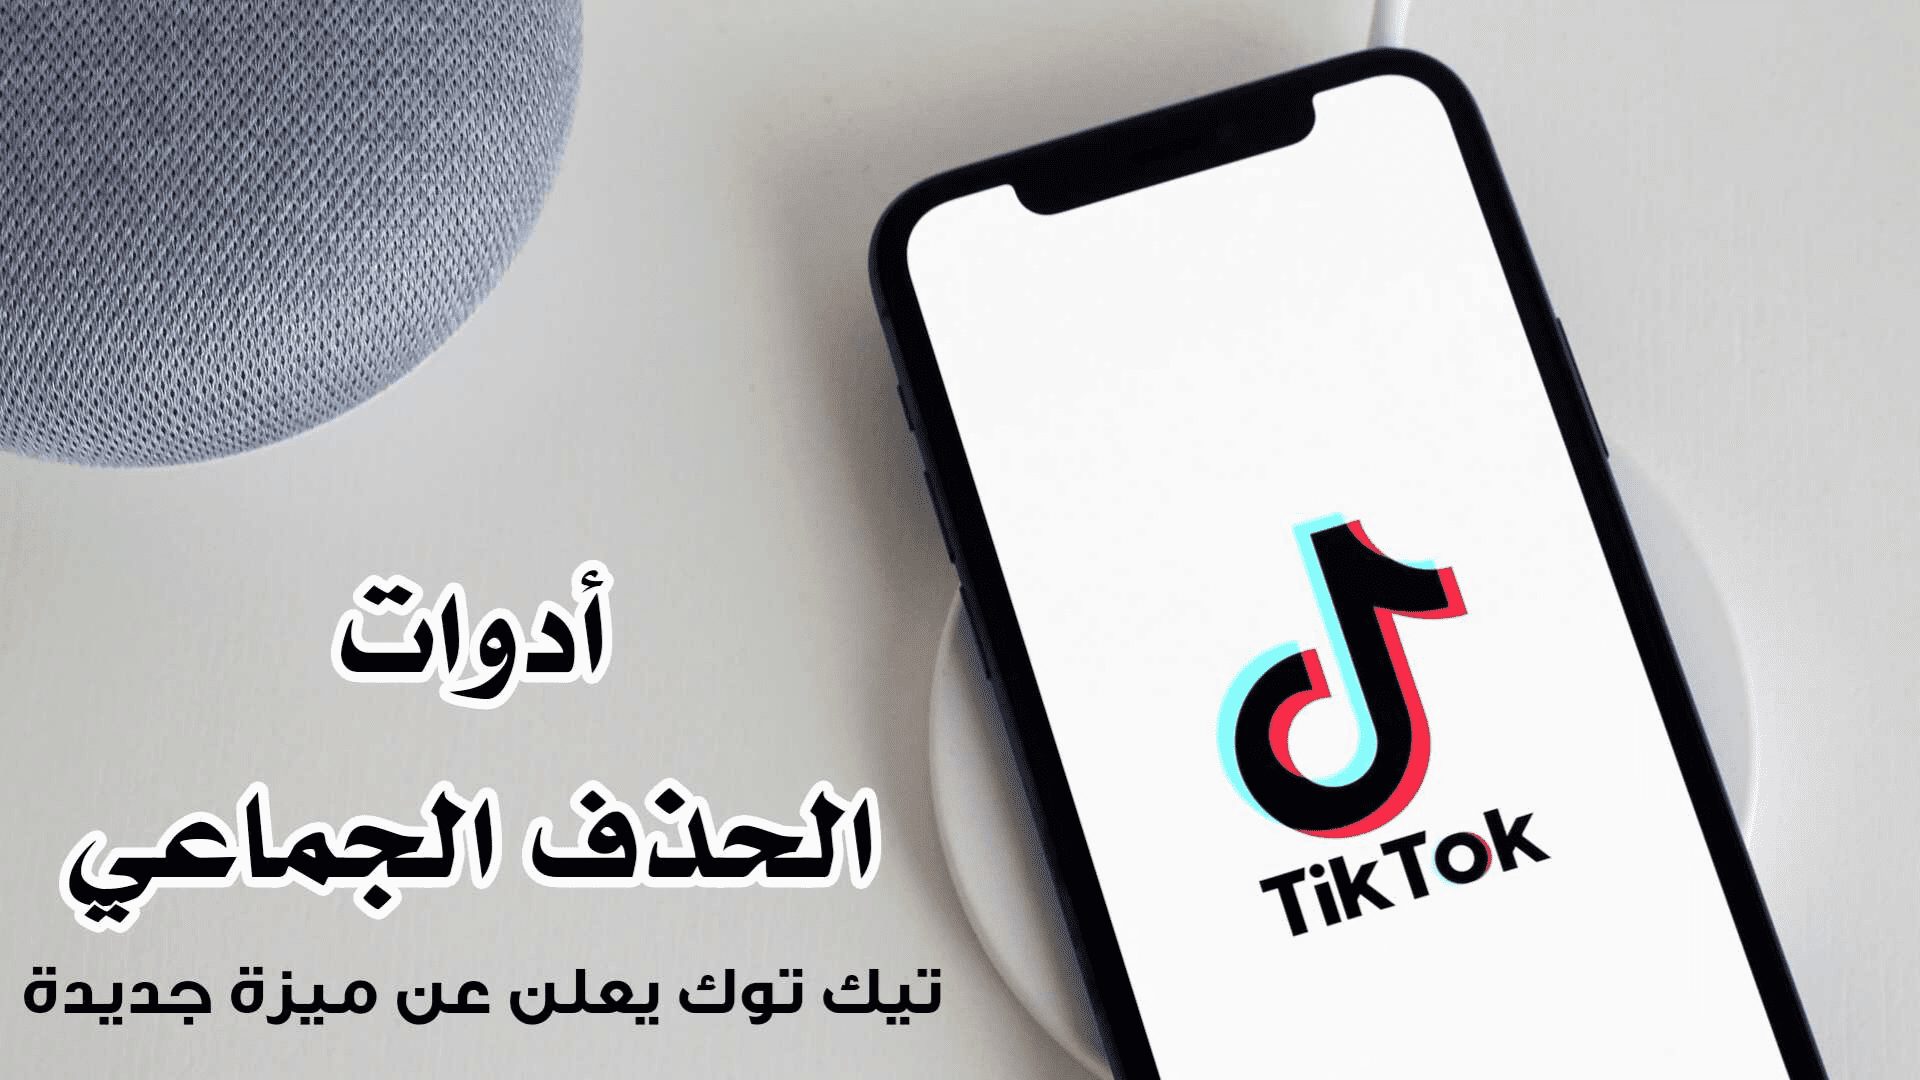 تطبيق TikTok يعلن عن ميزة جديدة الحظر الجماعي والإبلاغ وحذف التعليقات